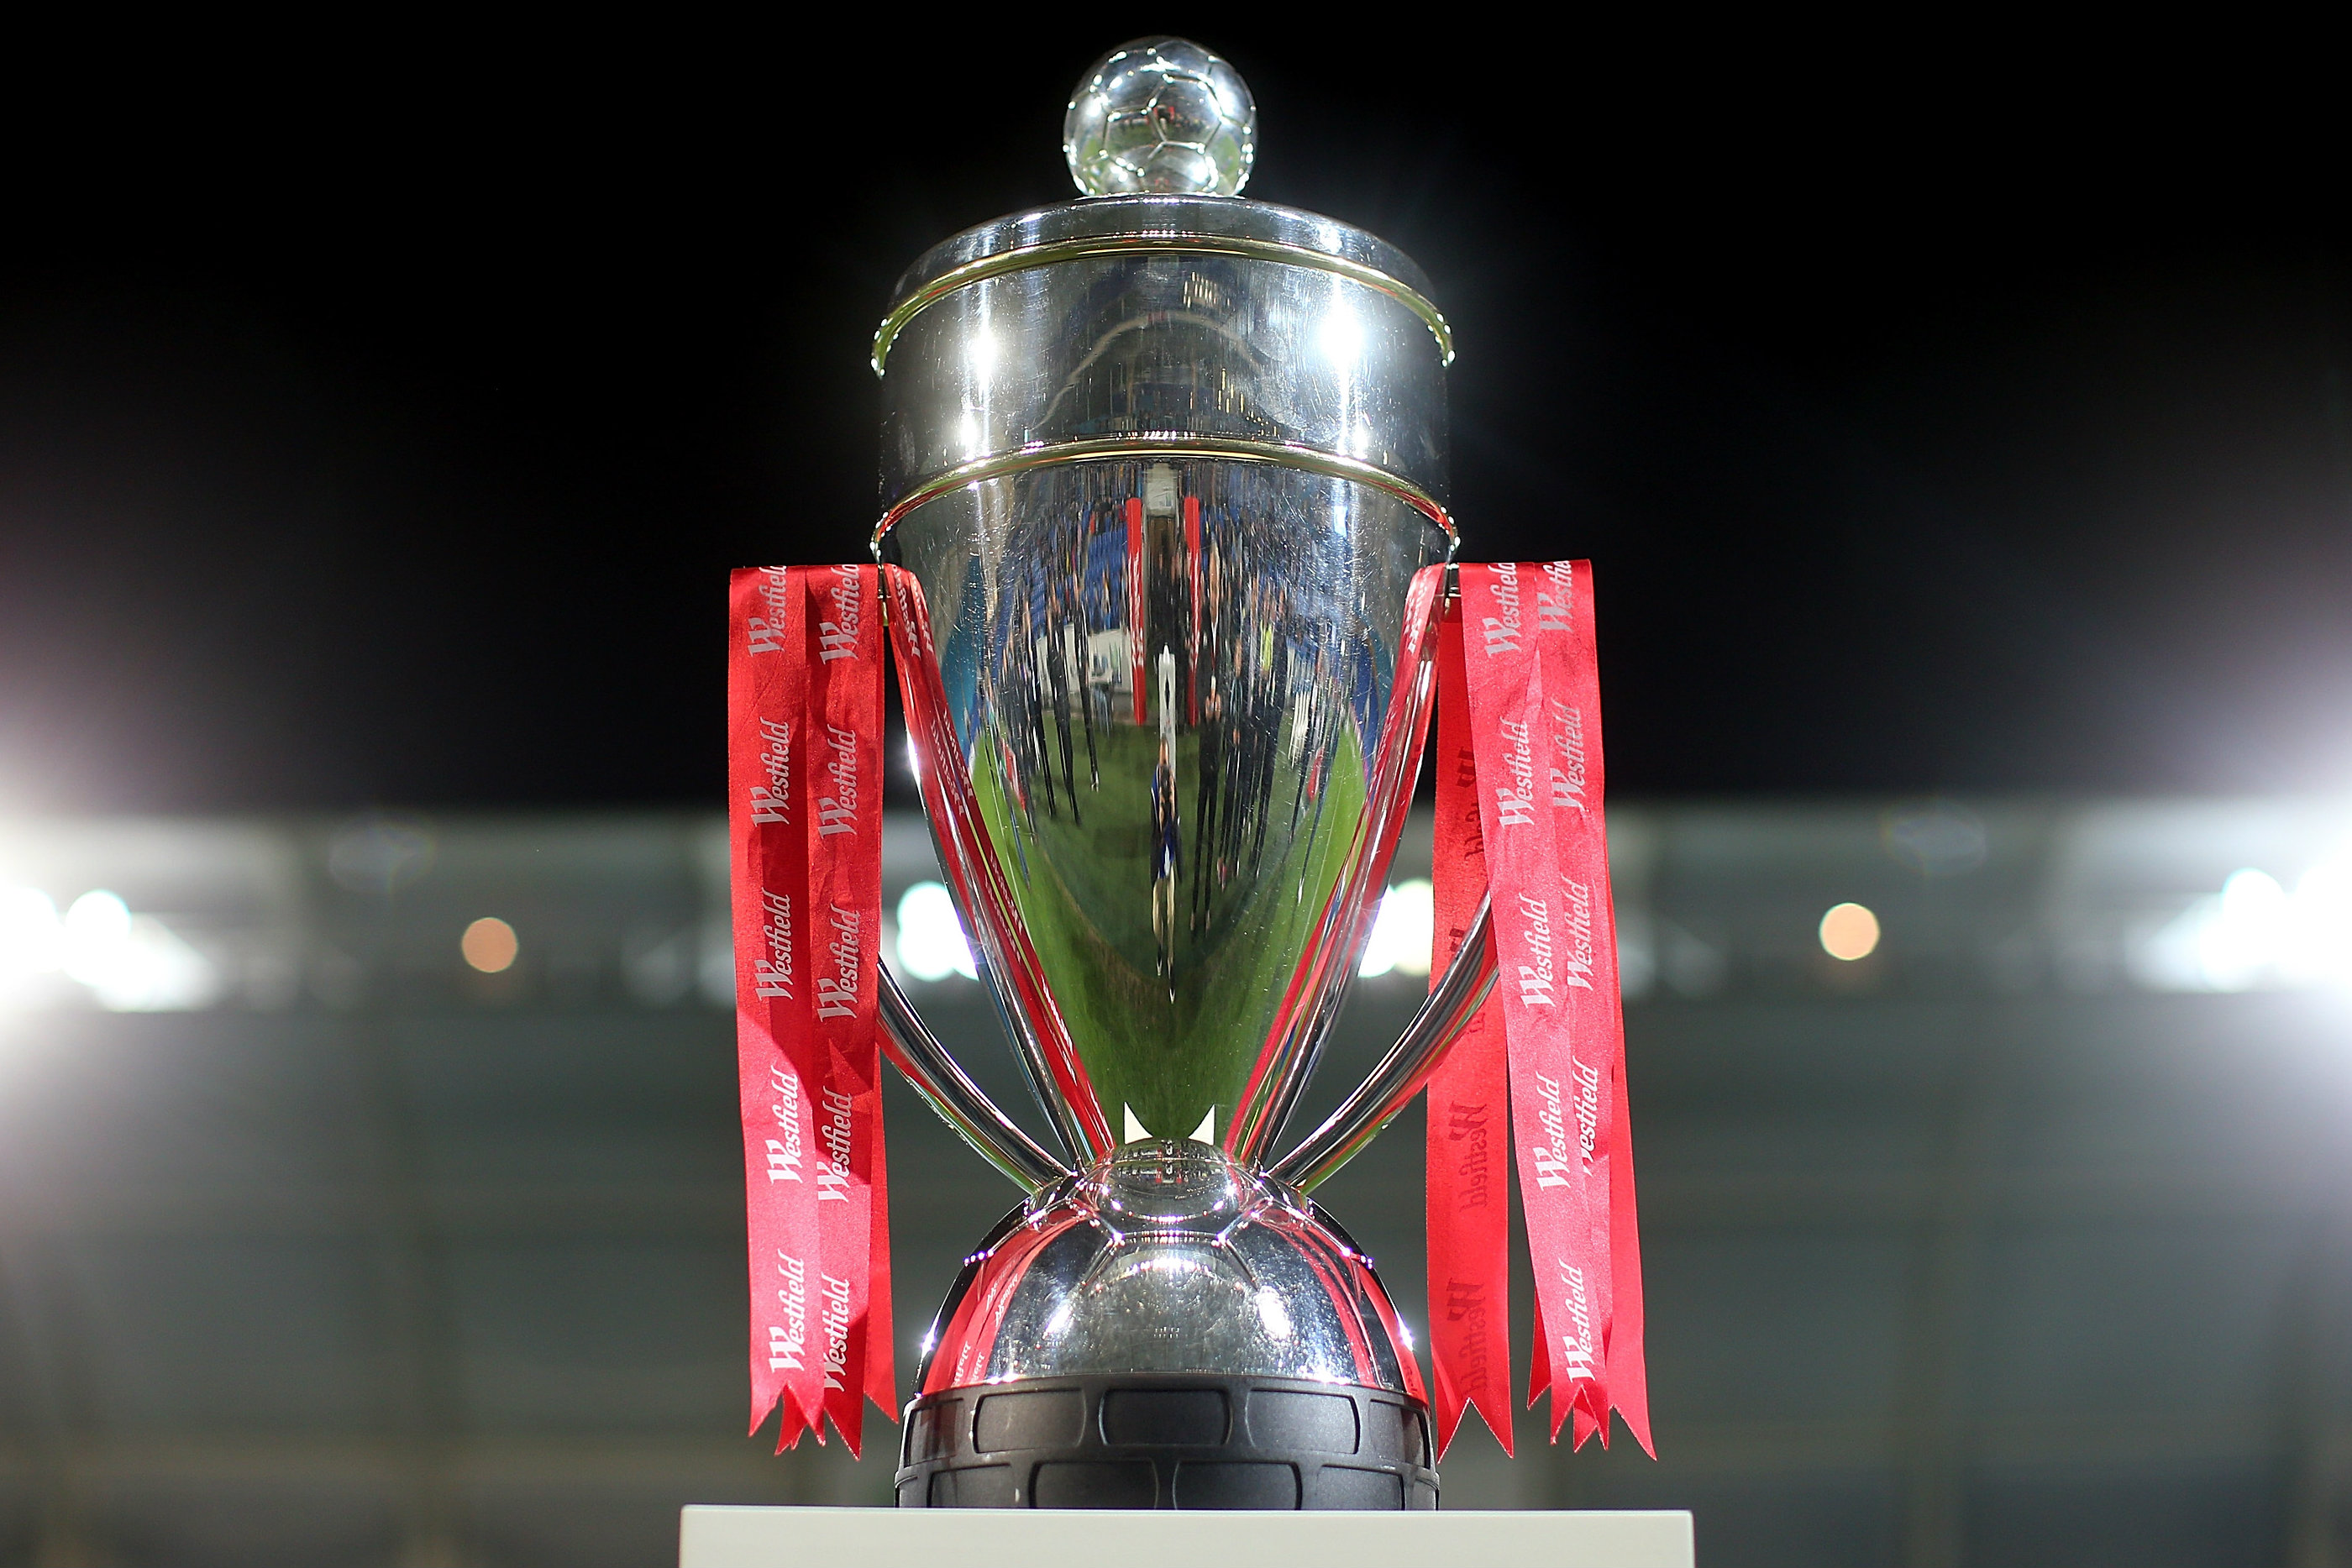 FFA Cup trophy